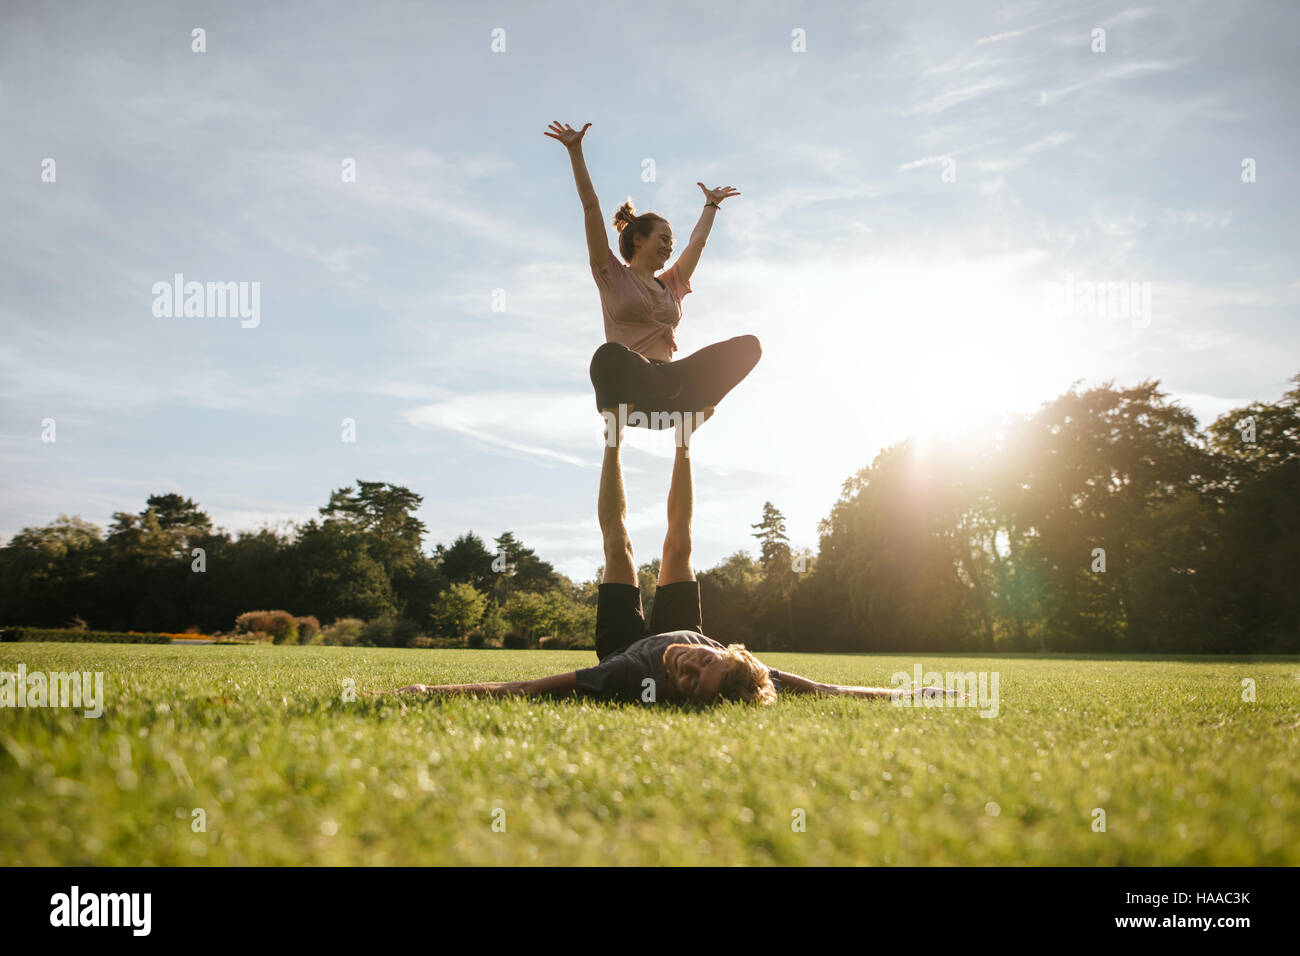 Colocar pareja joven haciendo acro yoga en el parque. Hombre tumbado sobre el césped y equilibrar la mujer en sus pies. Foto de stock